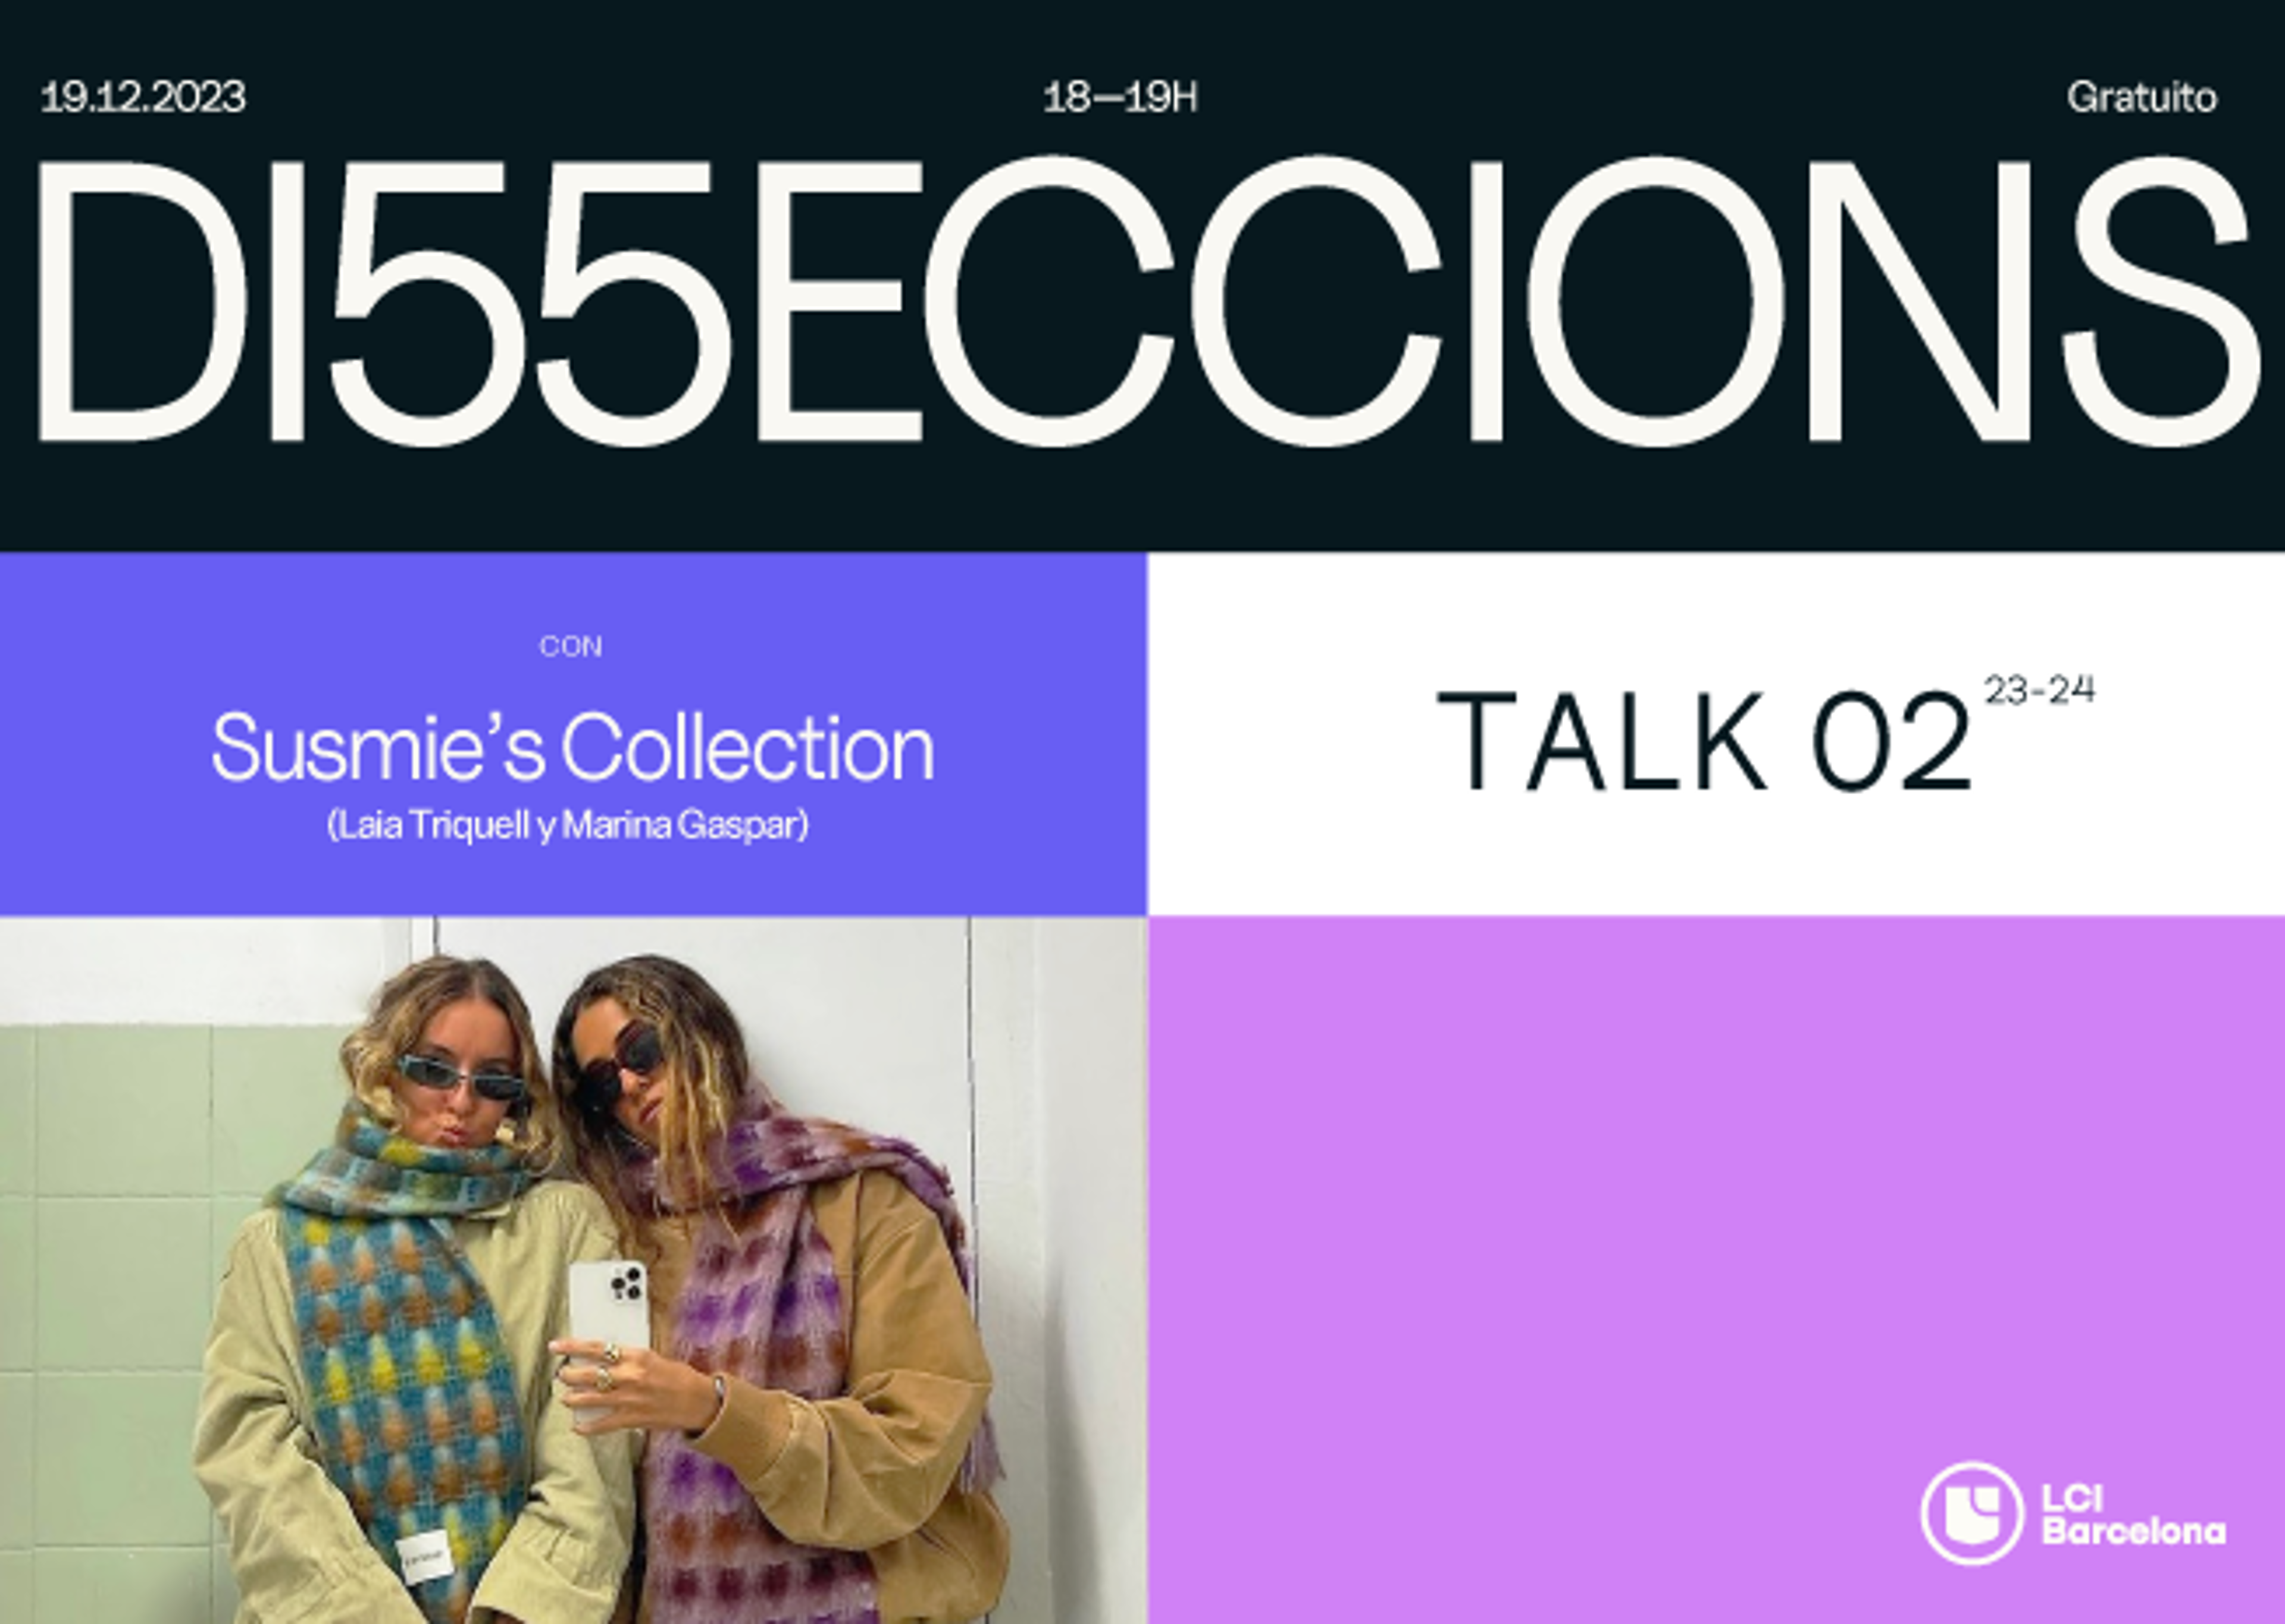 Gráfico promocional para el evento 'D15ECCIONS' el 19.12.2023 presentando la charla 'Colección de Susmie', con dos mujeres tomando un selfie.